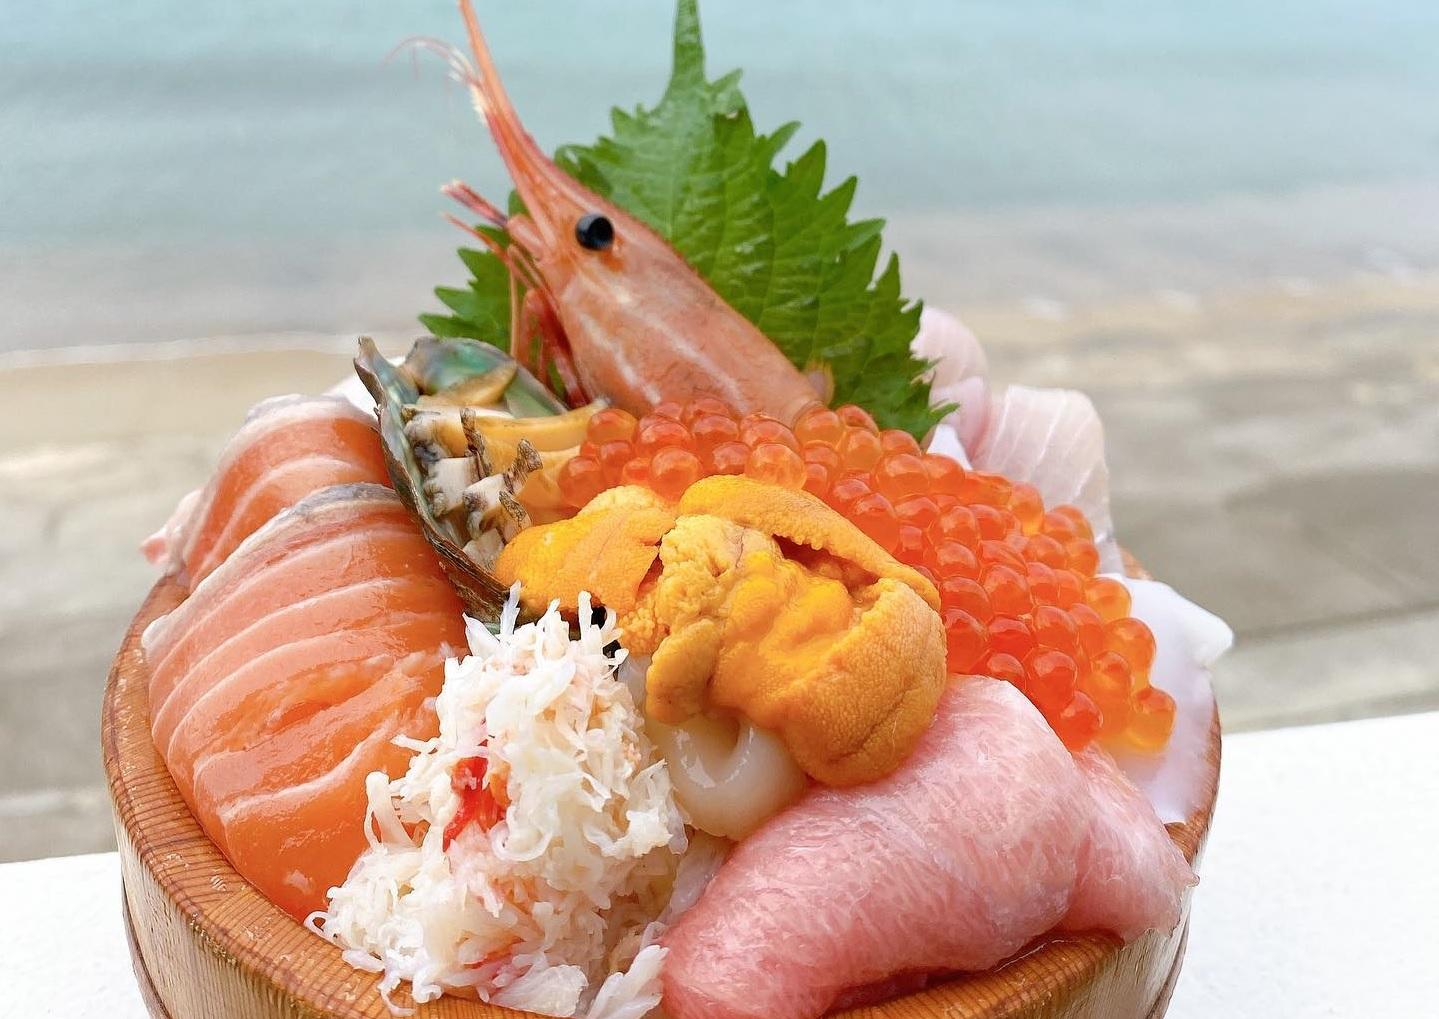 먹기에도 좋고 사진에 담기에도 좋은 해물덮밥 '이토시마 식당'-0